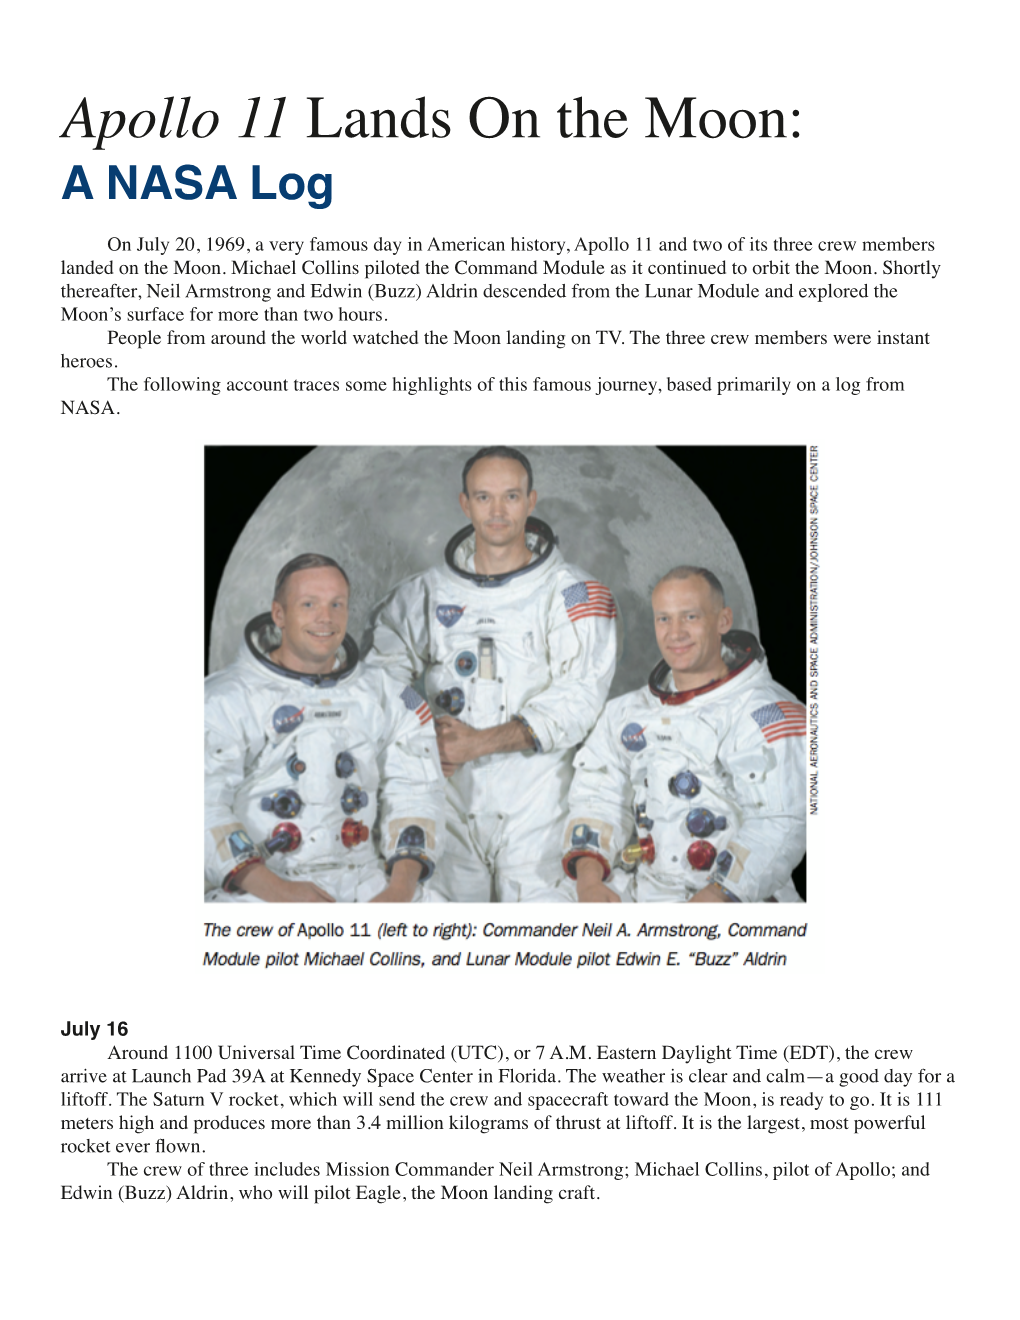 Apollo 11 Lands on the Moon- a NASA